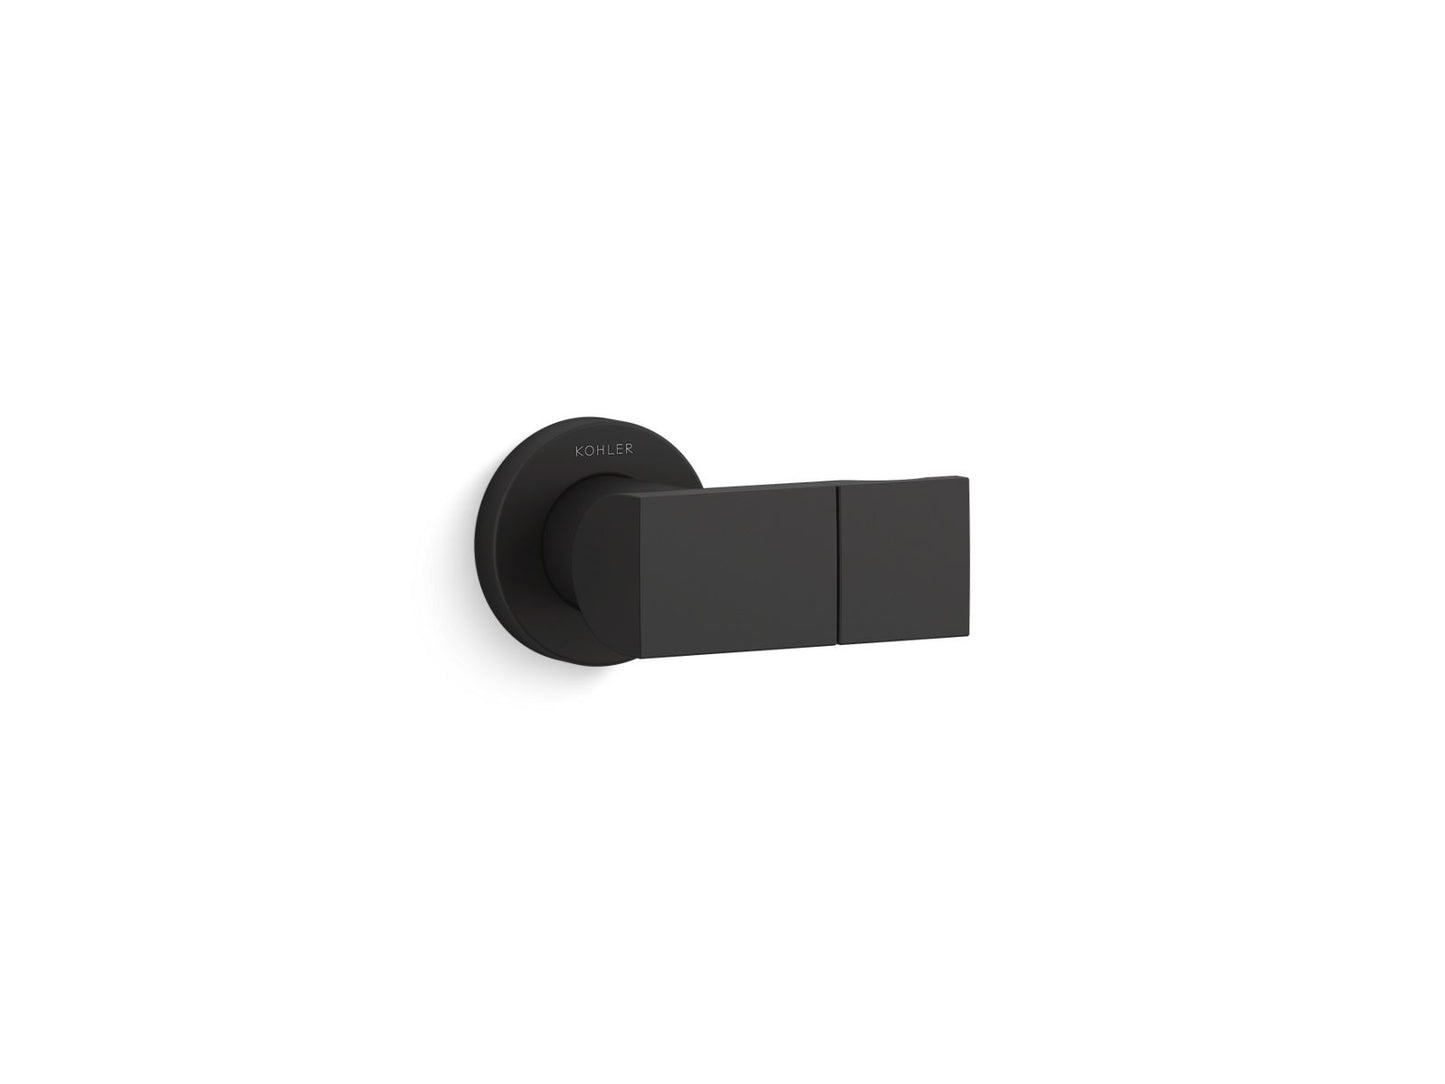 KOHLER K-98349-BL Exhale Adjustable Wall Holder In Matte Black